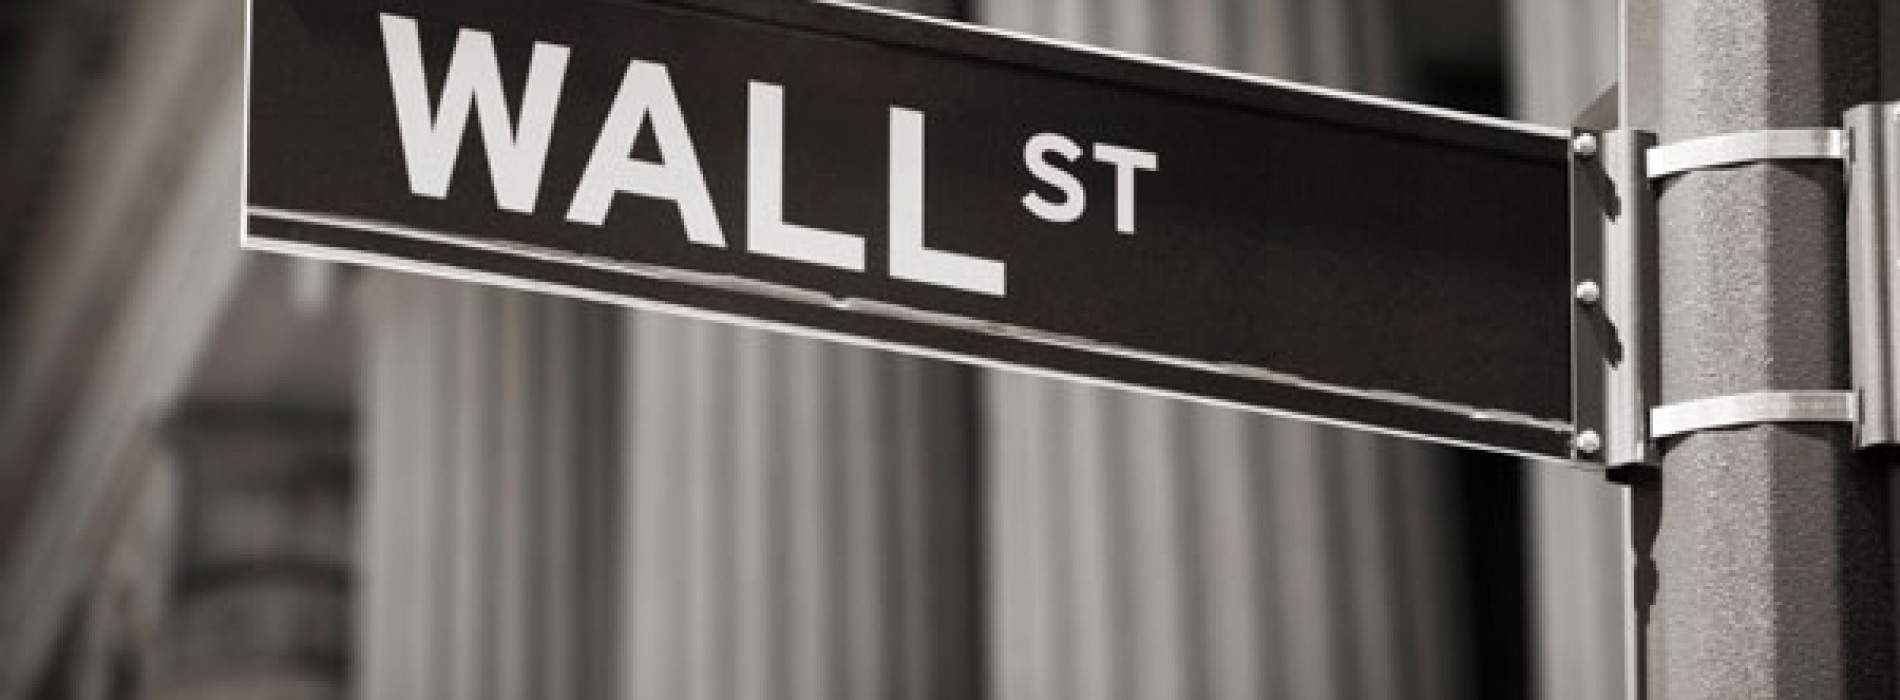 Rekordy na Wall Streetnie wystarczą Europie